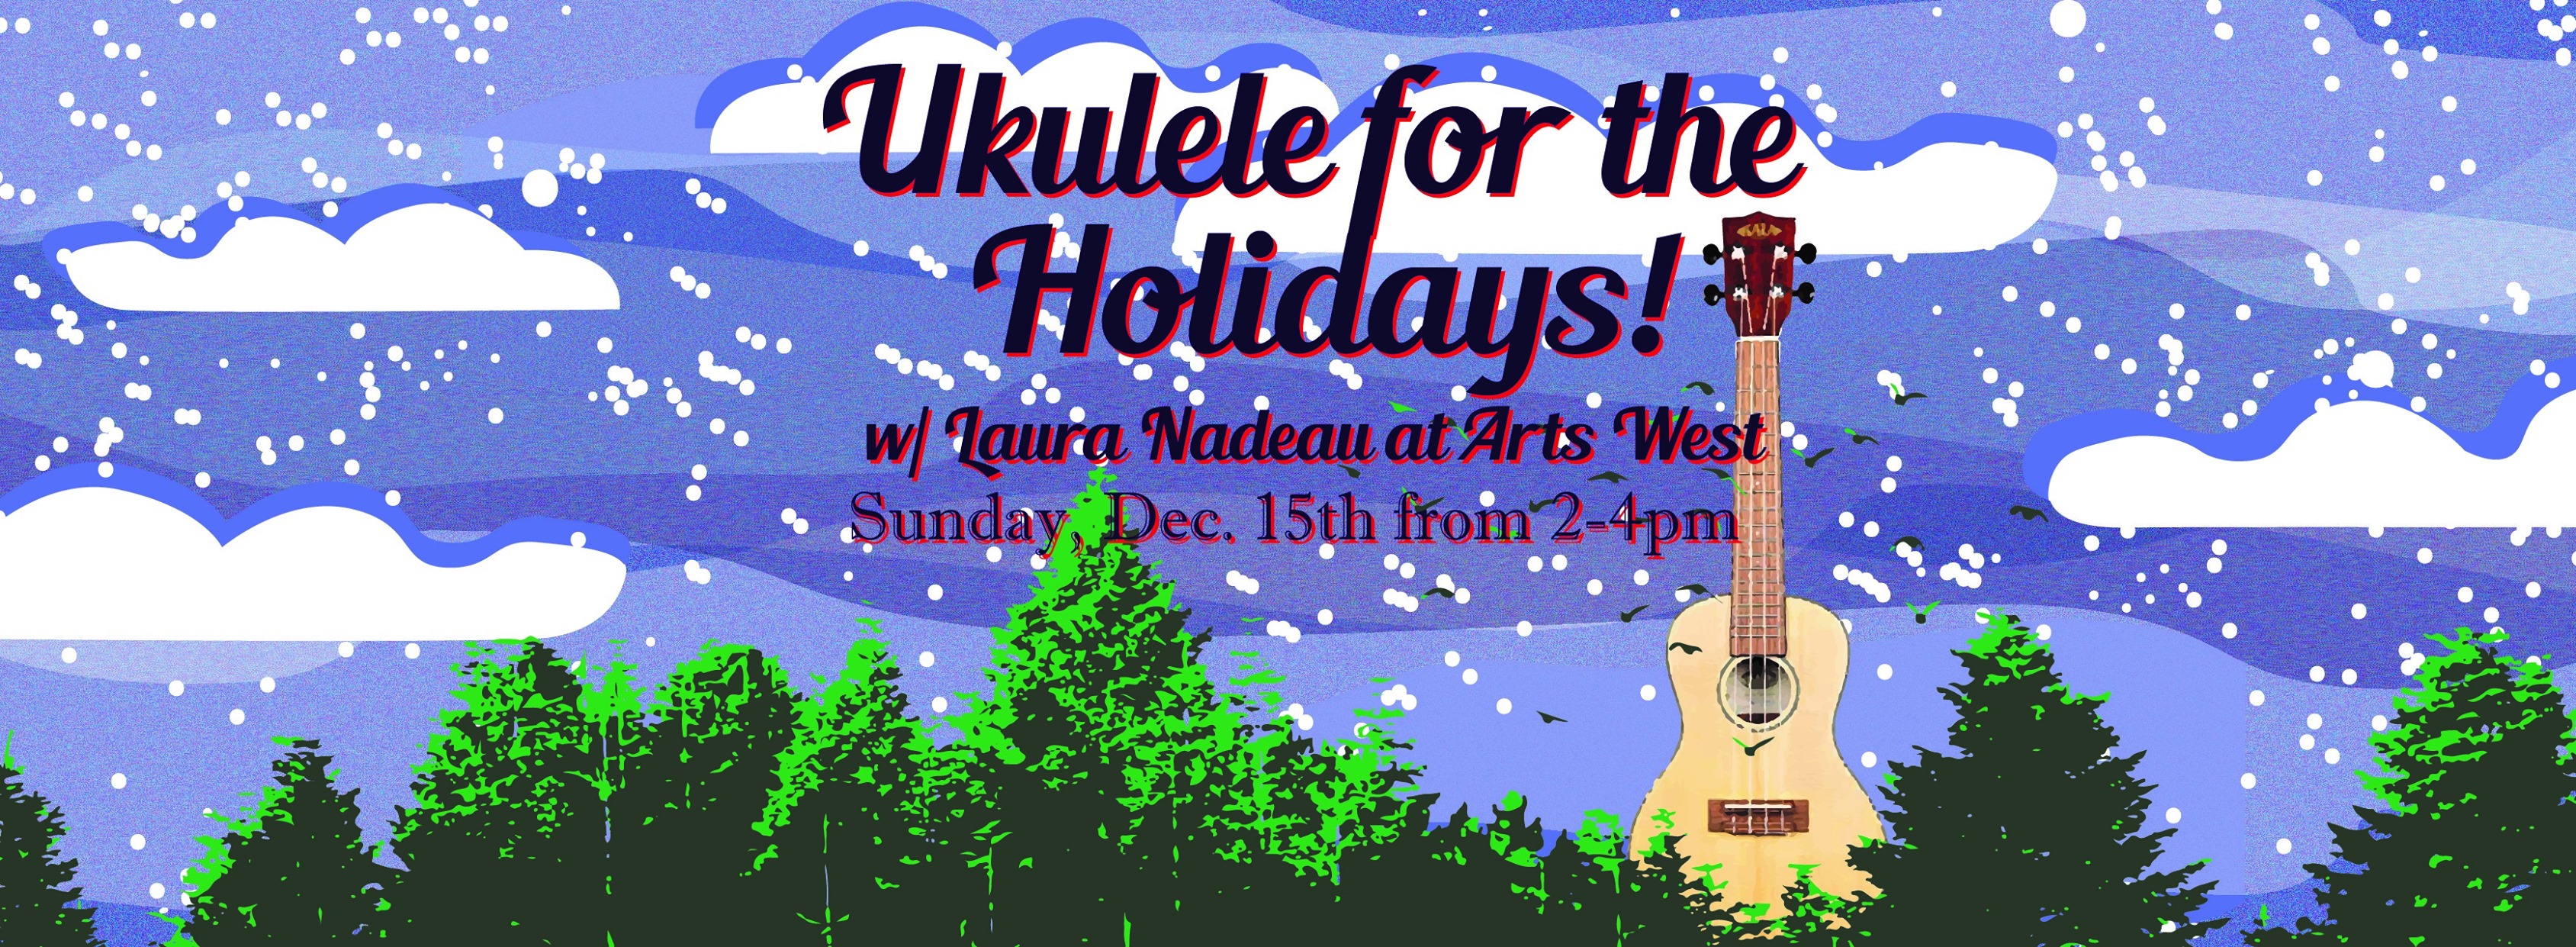 Ukulele for the holidays flier